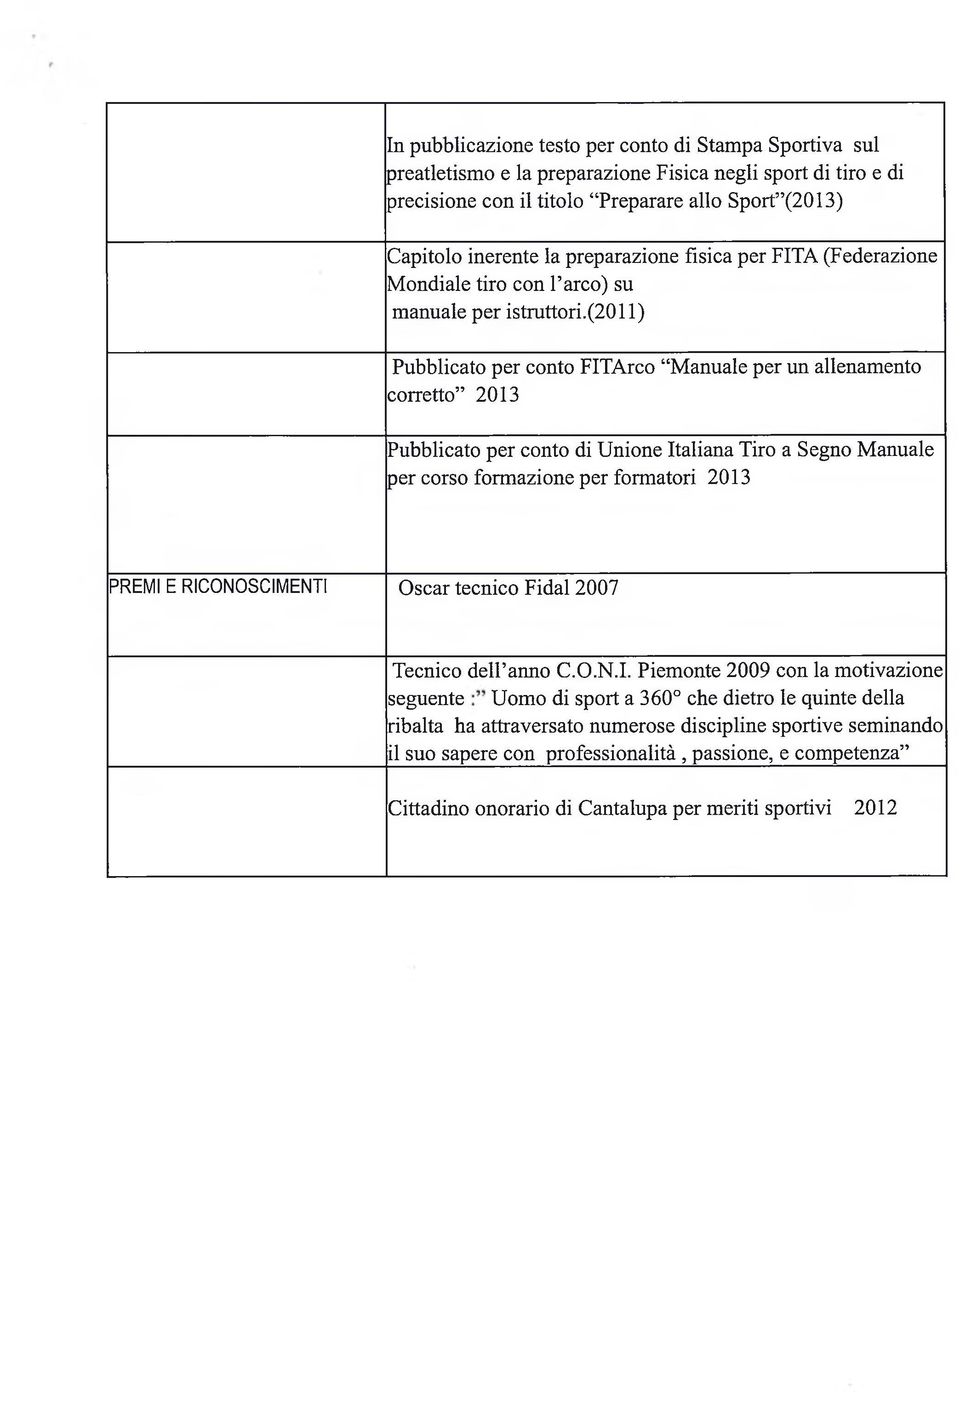 (2011) Pubblicato per conto FITArco Manuale per un allenamento corretto 2013 Pubblicato per conto di Unione Italiana Tiro a Segno Manuale per corso formazione per formatori 2013 PREMI E RICONOSCIM